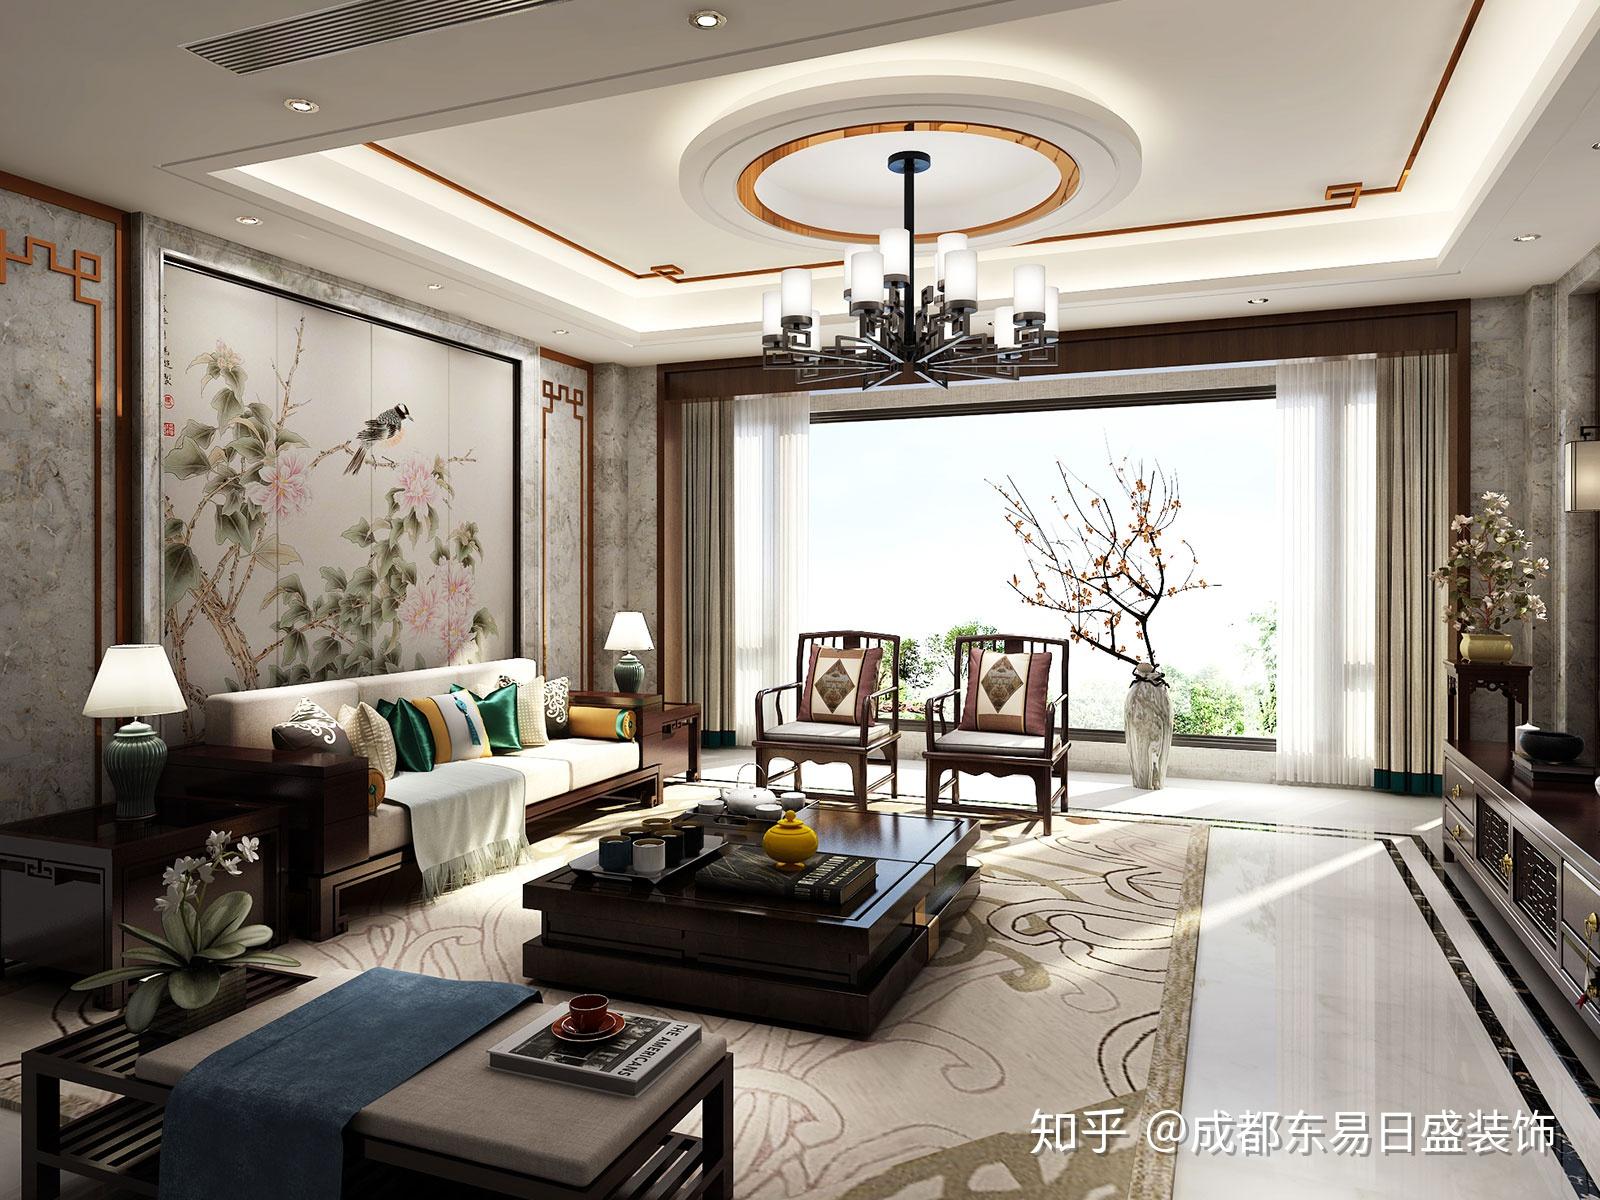 中式情节的雅致生活400㎡四合院别墅新中式风格装修效果图赏析丨成都